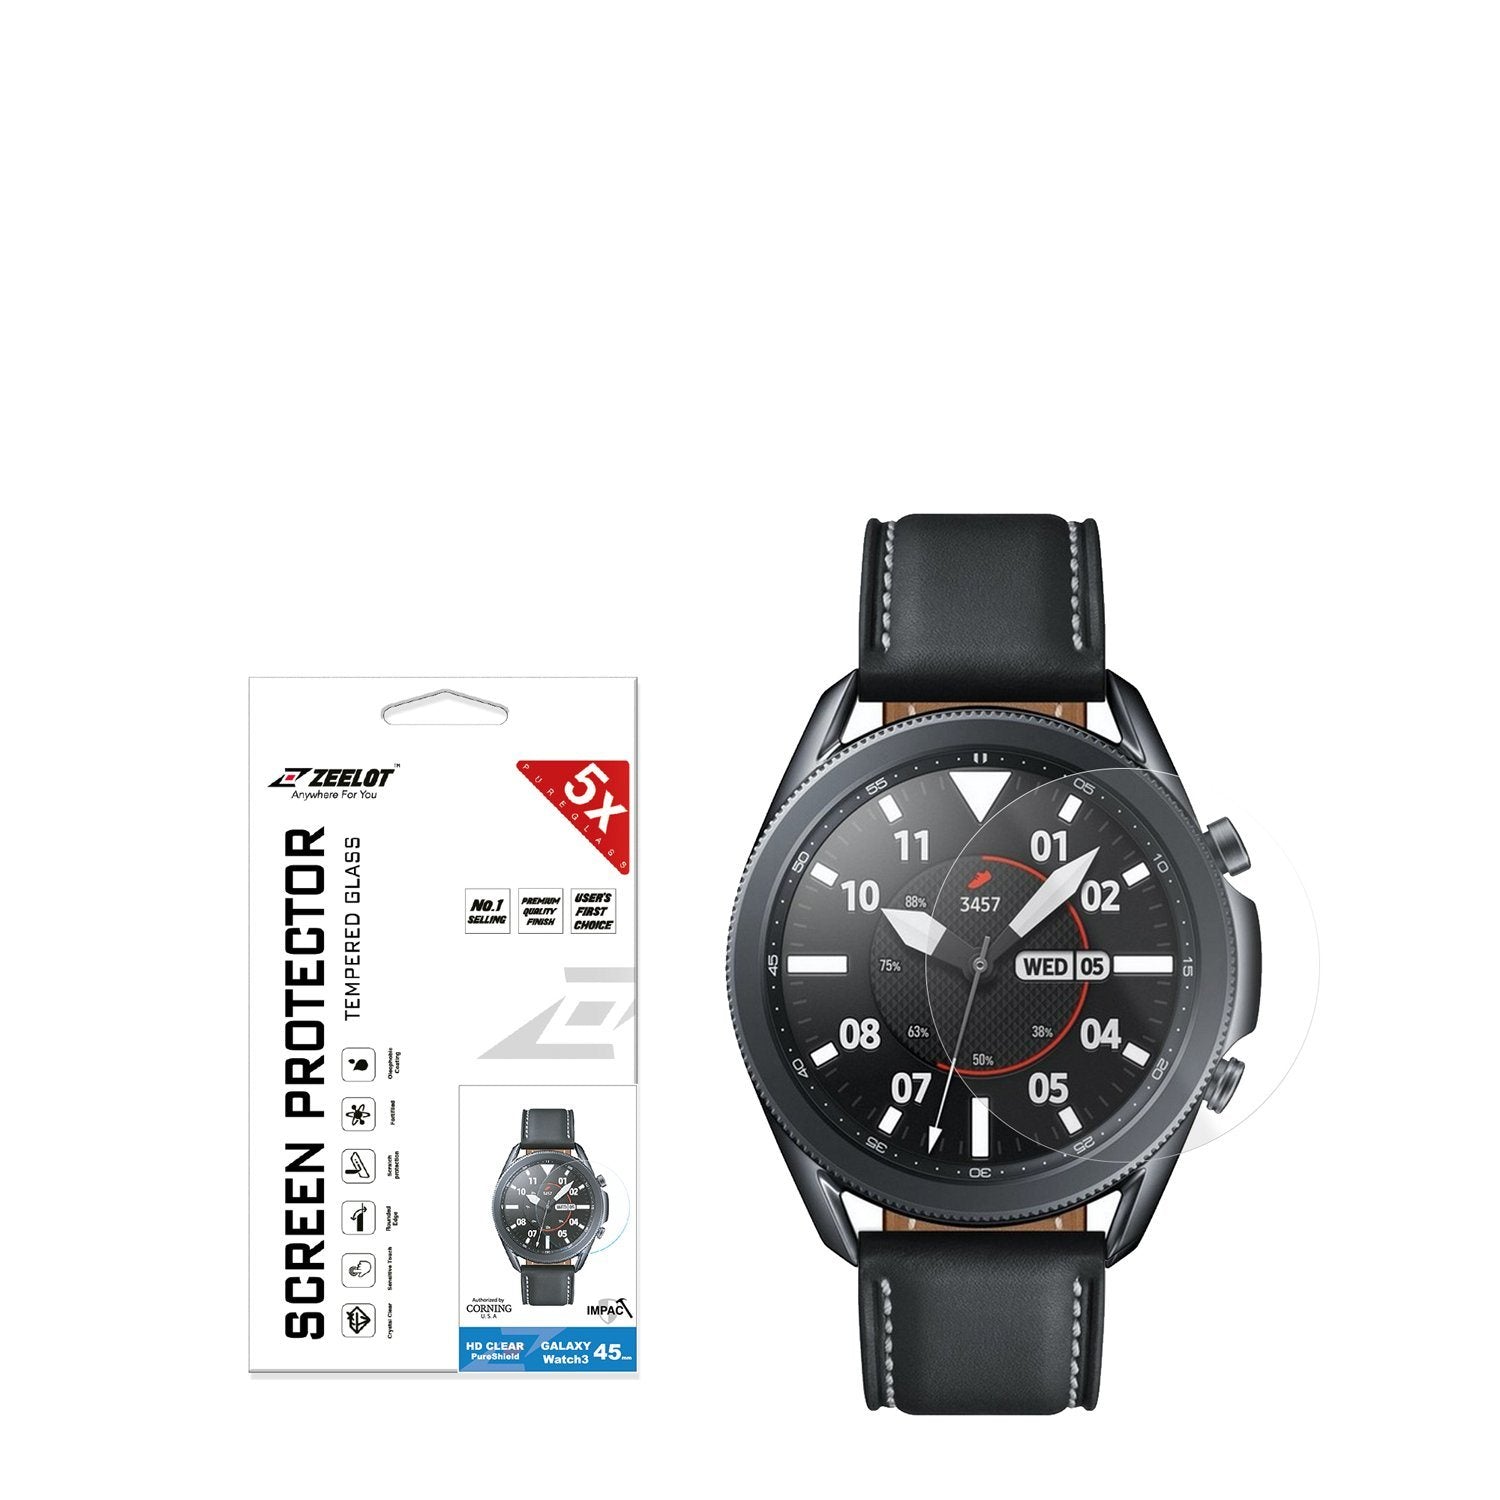 ZEELOT PureShield 2.5D Tempered Glass Screen Protector for Samsung Galaxy Watch 3 45mm (2Pcs), Clear Default ZEELOT 